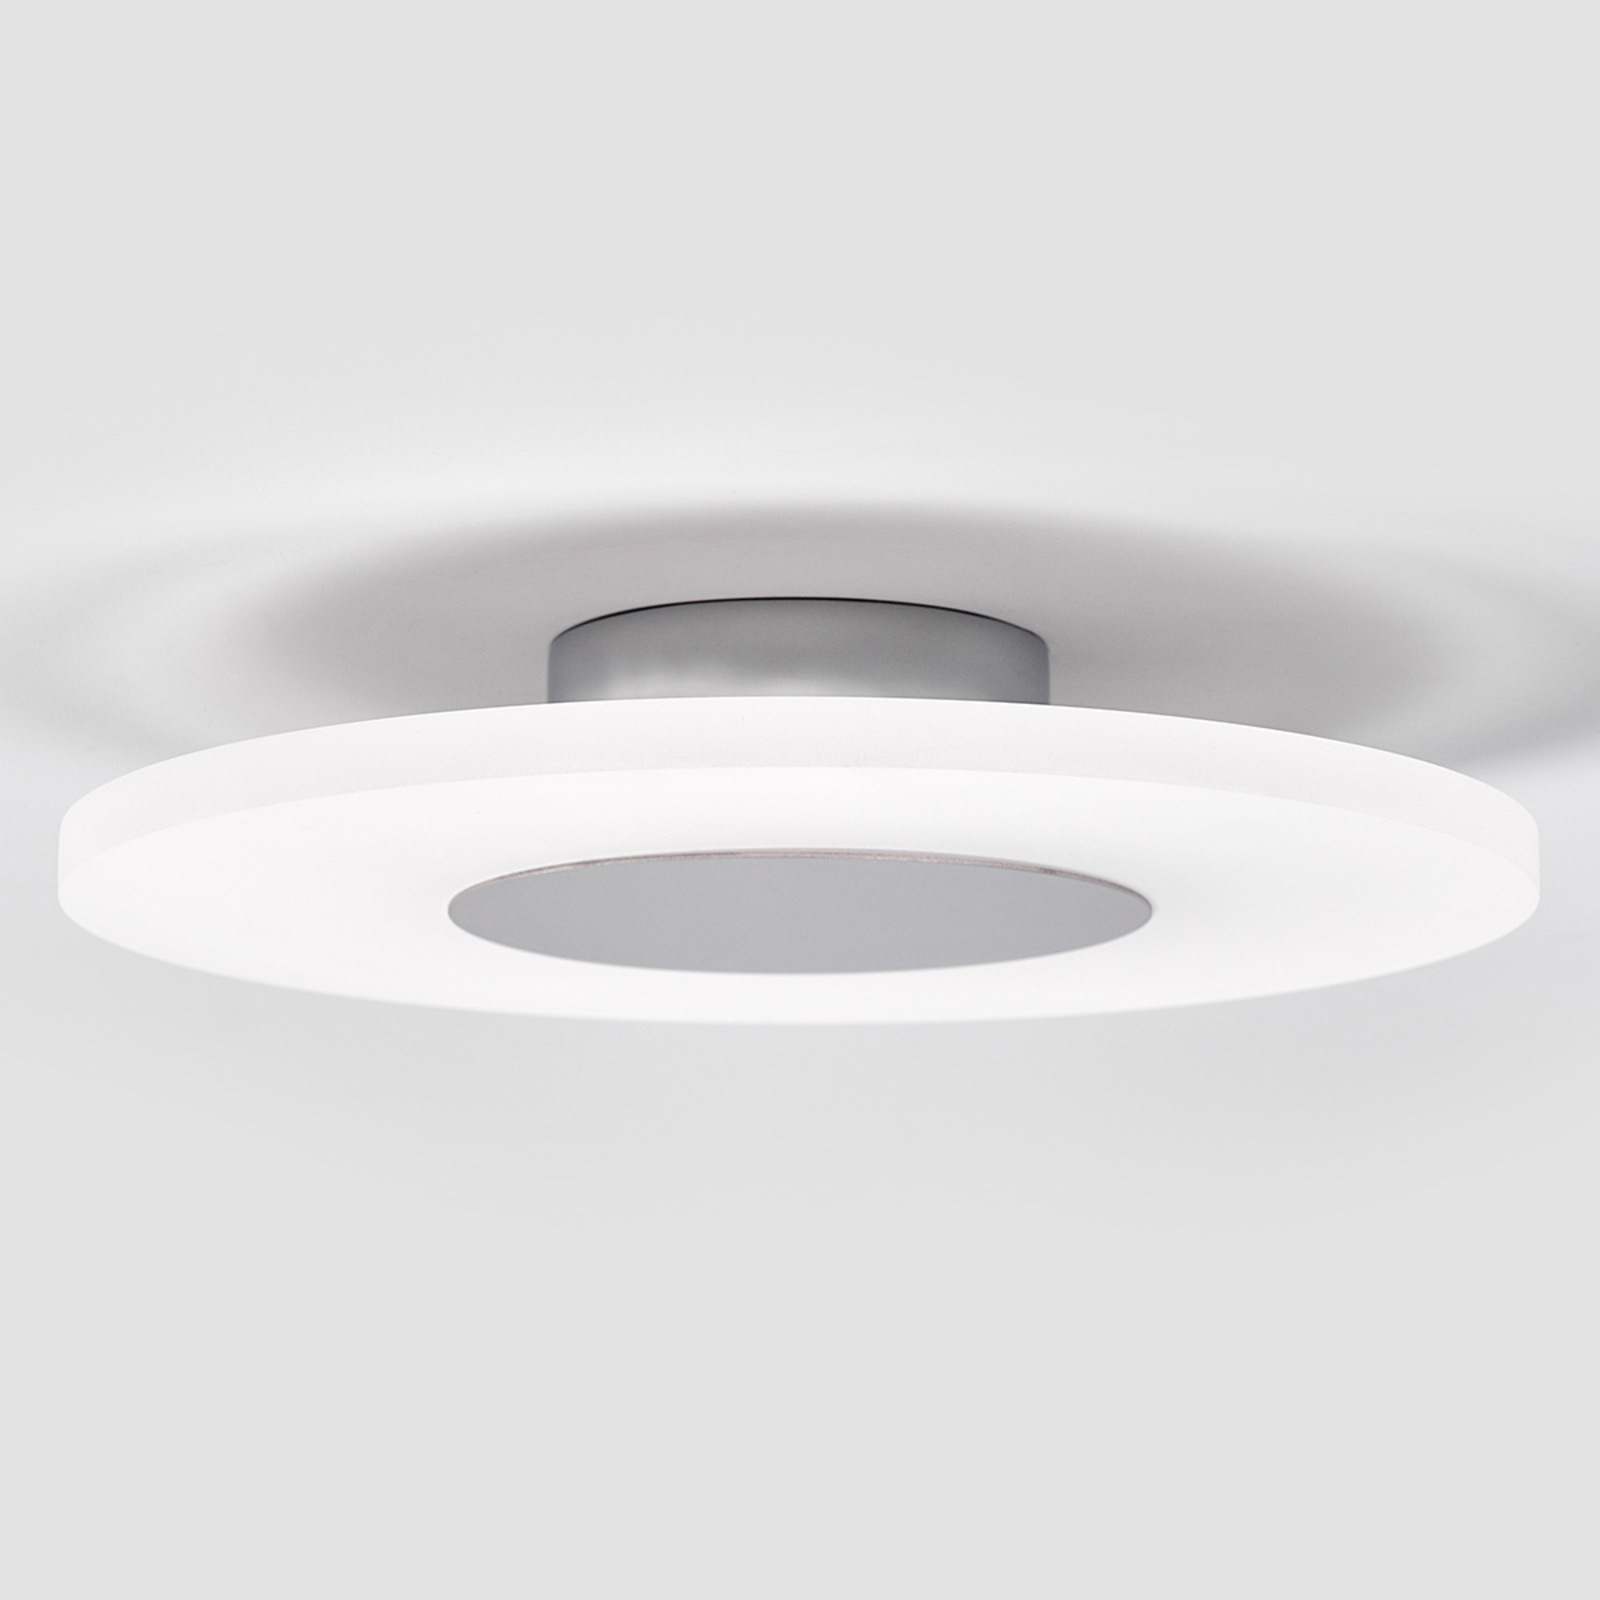 Dekorativní LED stropní svítilna Tarja